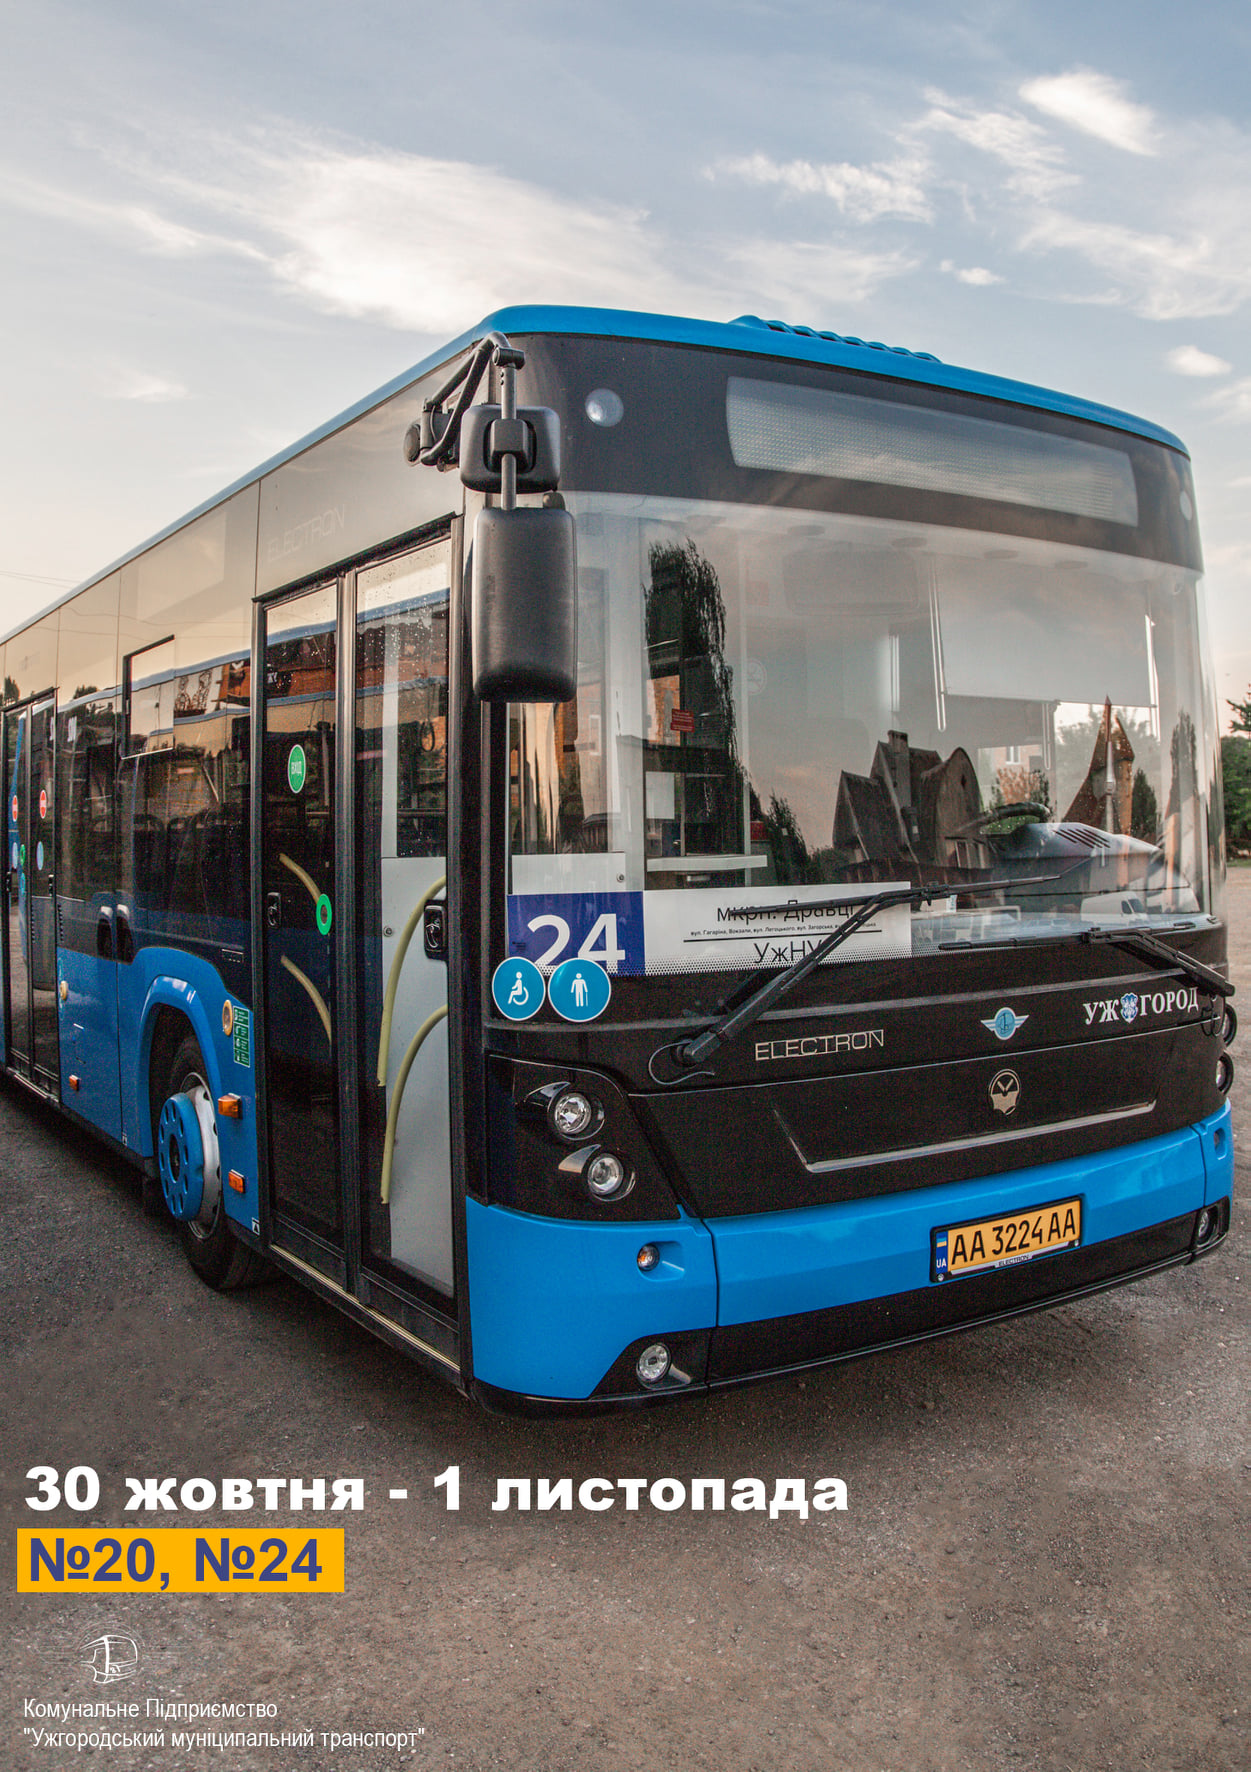 30, 31 жовтня та 1 листопада 2020 року кількість автобусів, які курсують до міського цвинтаря „Барвінок”, буде збільшено